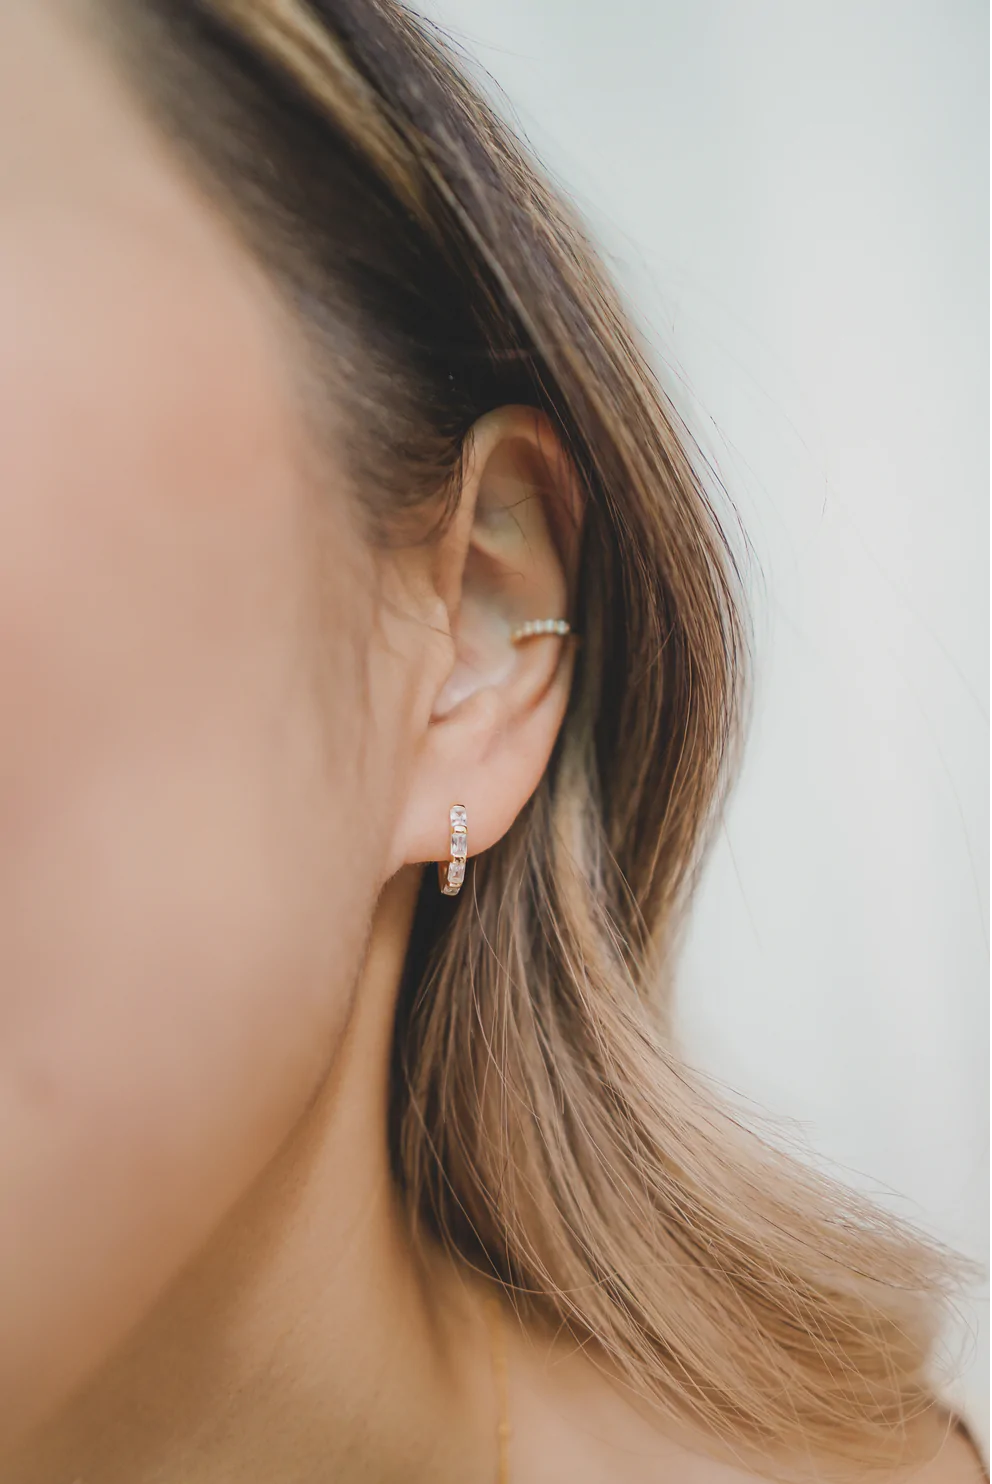 Geometric Baguette CZ Huggie Earrings - Gold